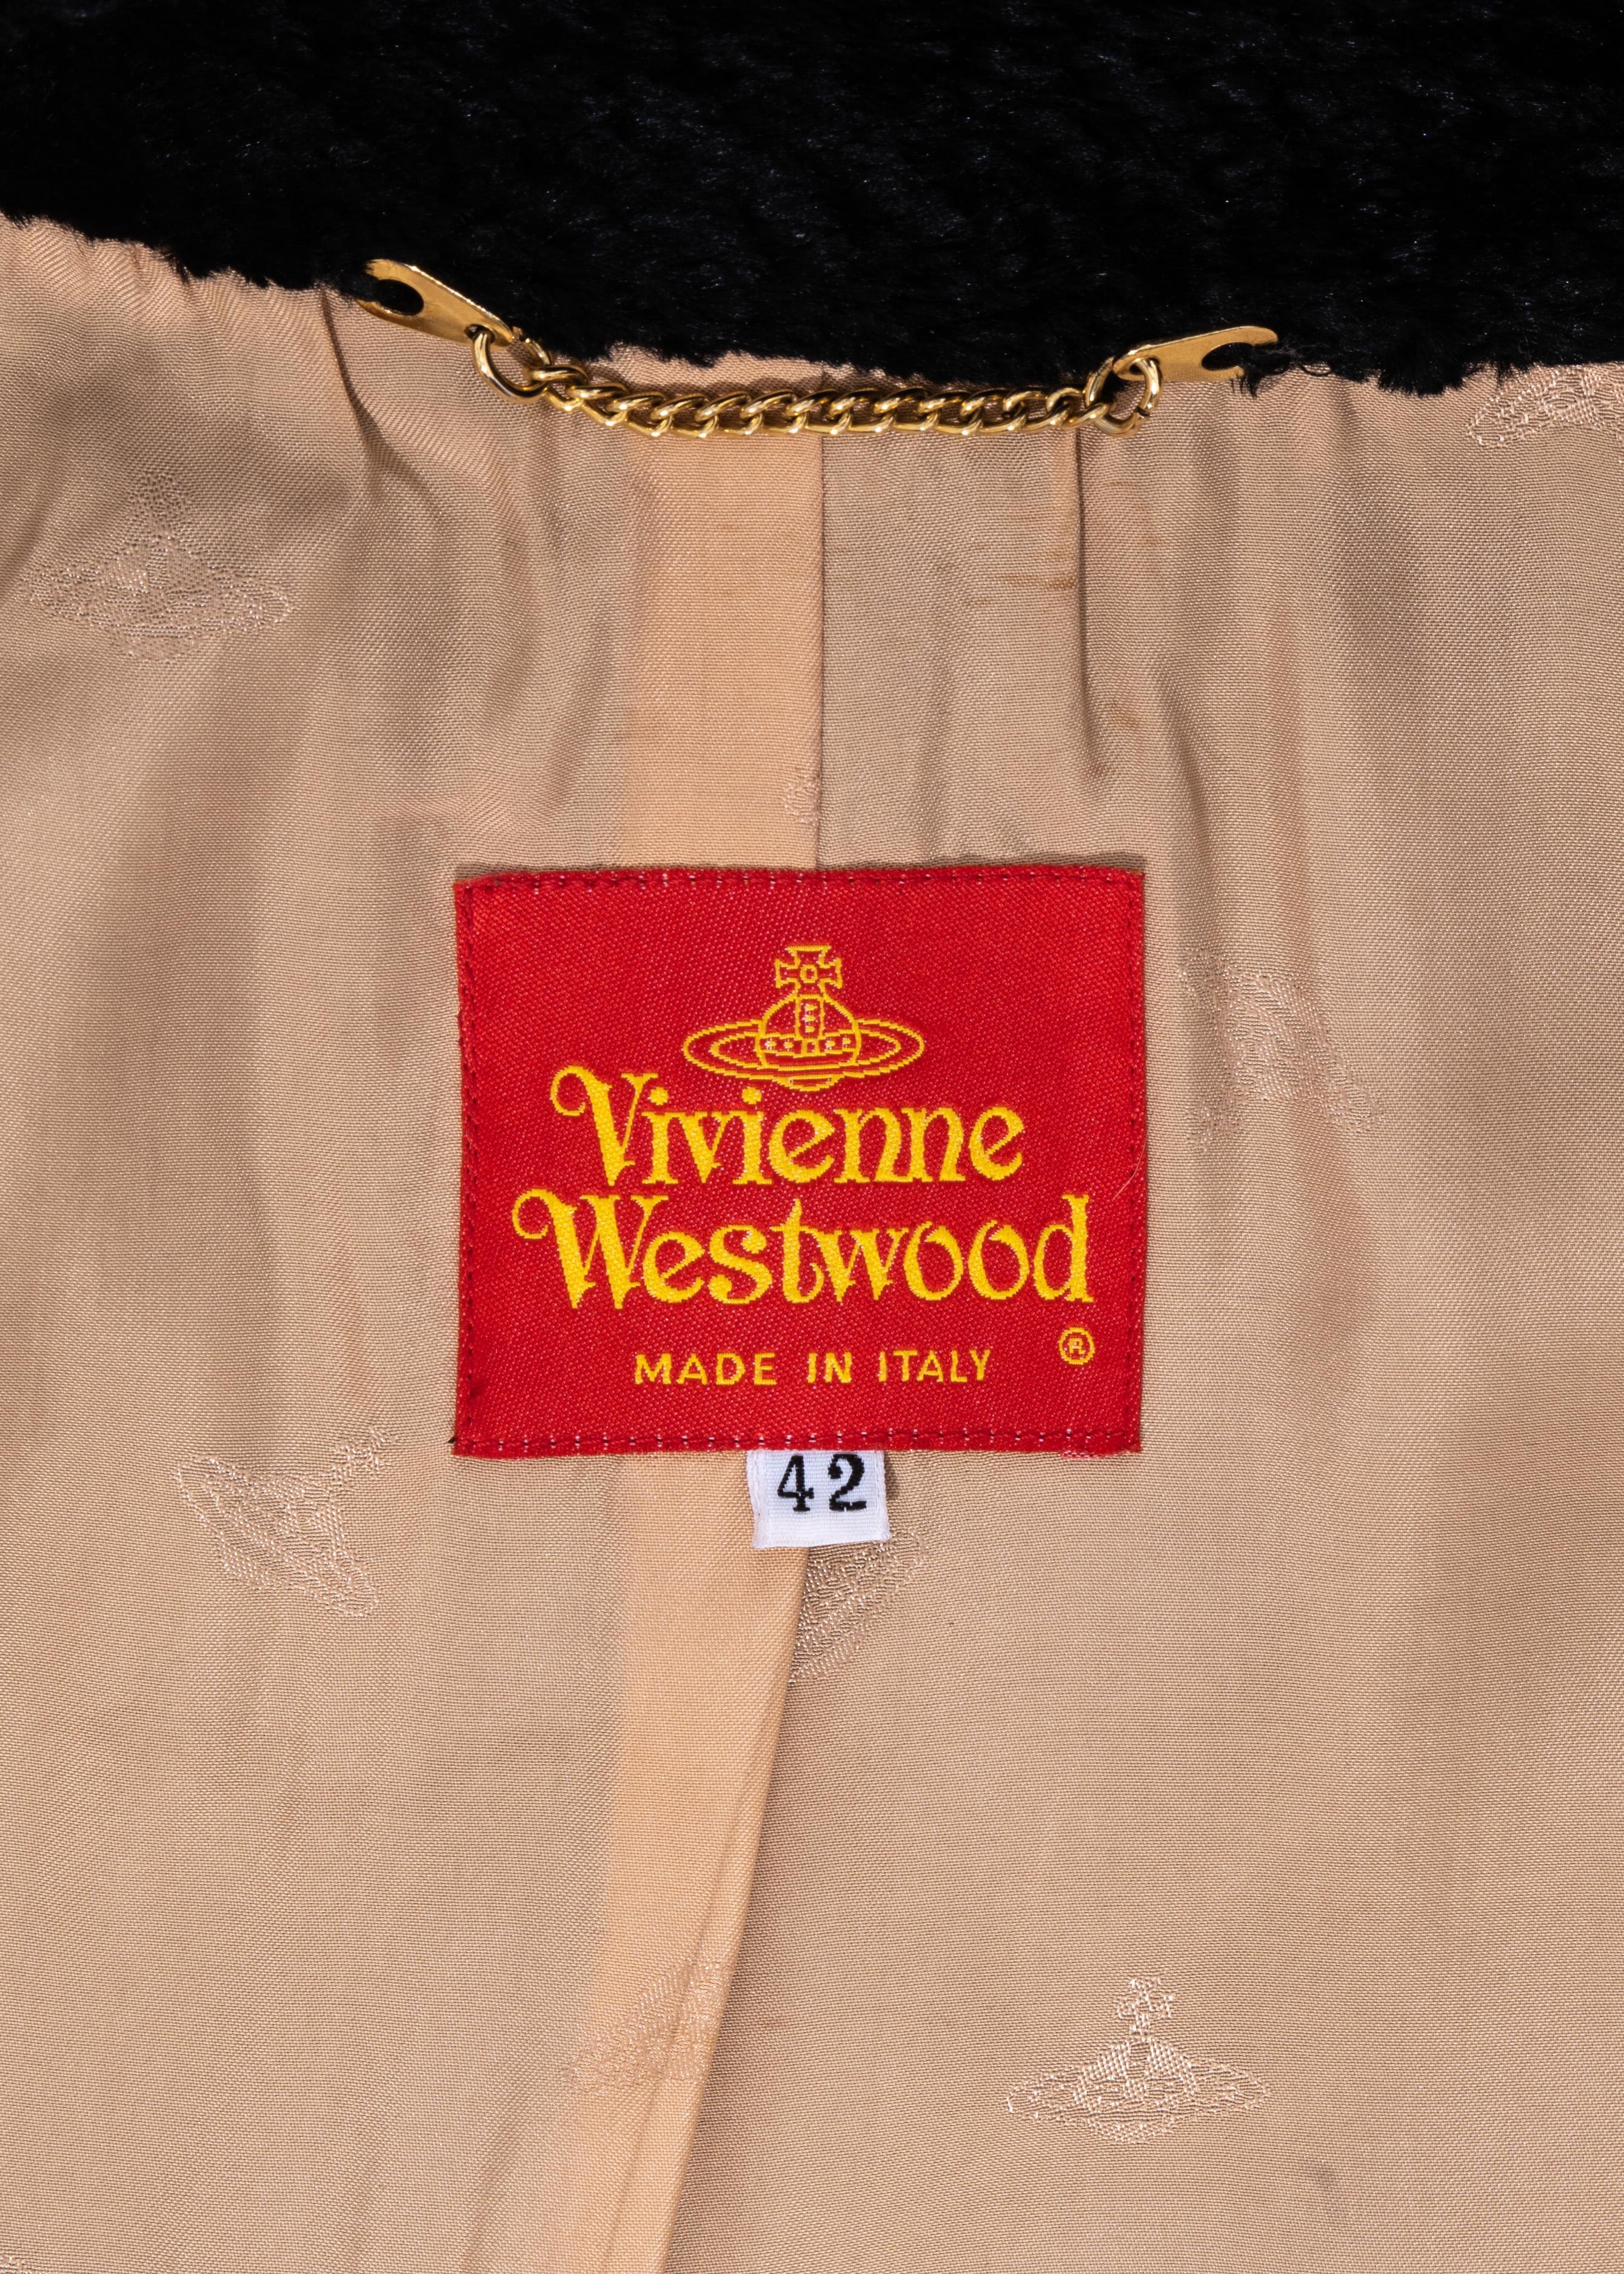 Vivienne Westwood black faux fur wrap jacket and mini skirt suit, fw 1994 For Sale 2